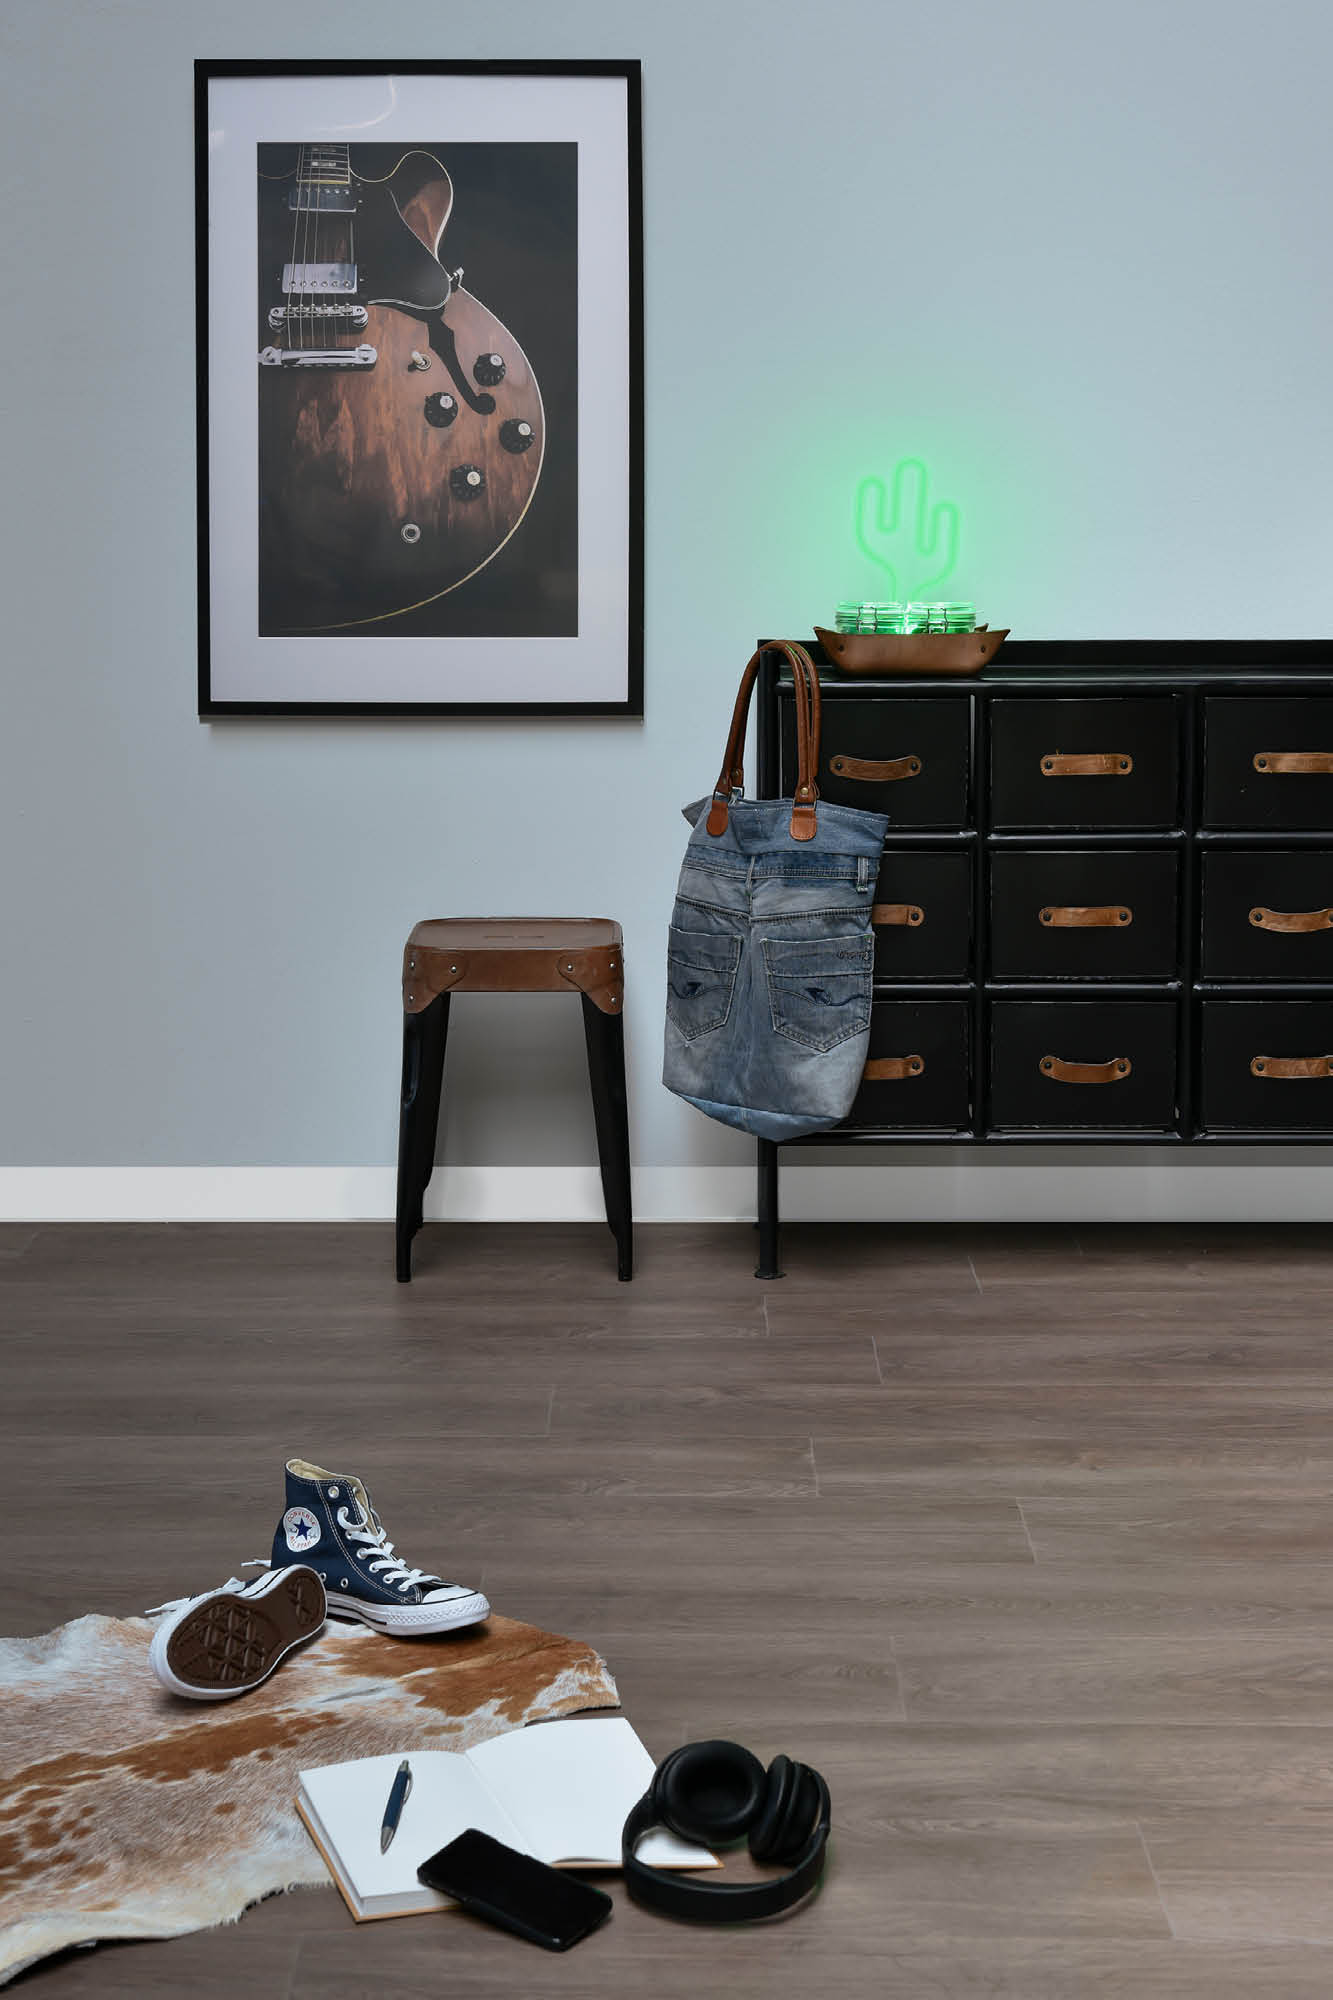 FotoExotone vinyl tiles: houten vloeren perfect nagebootst!